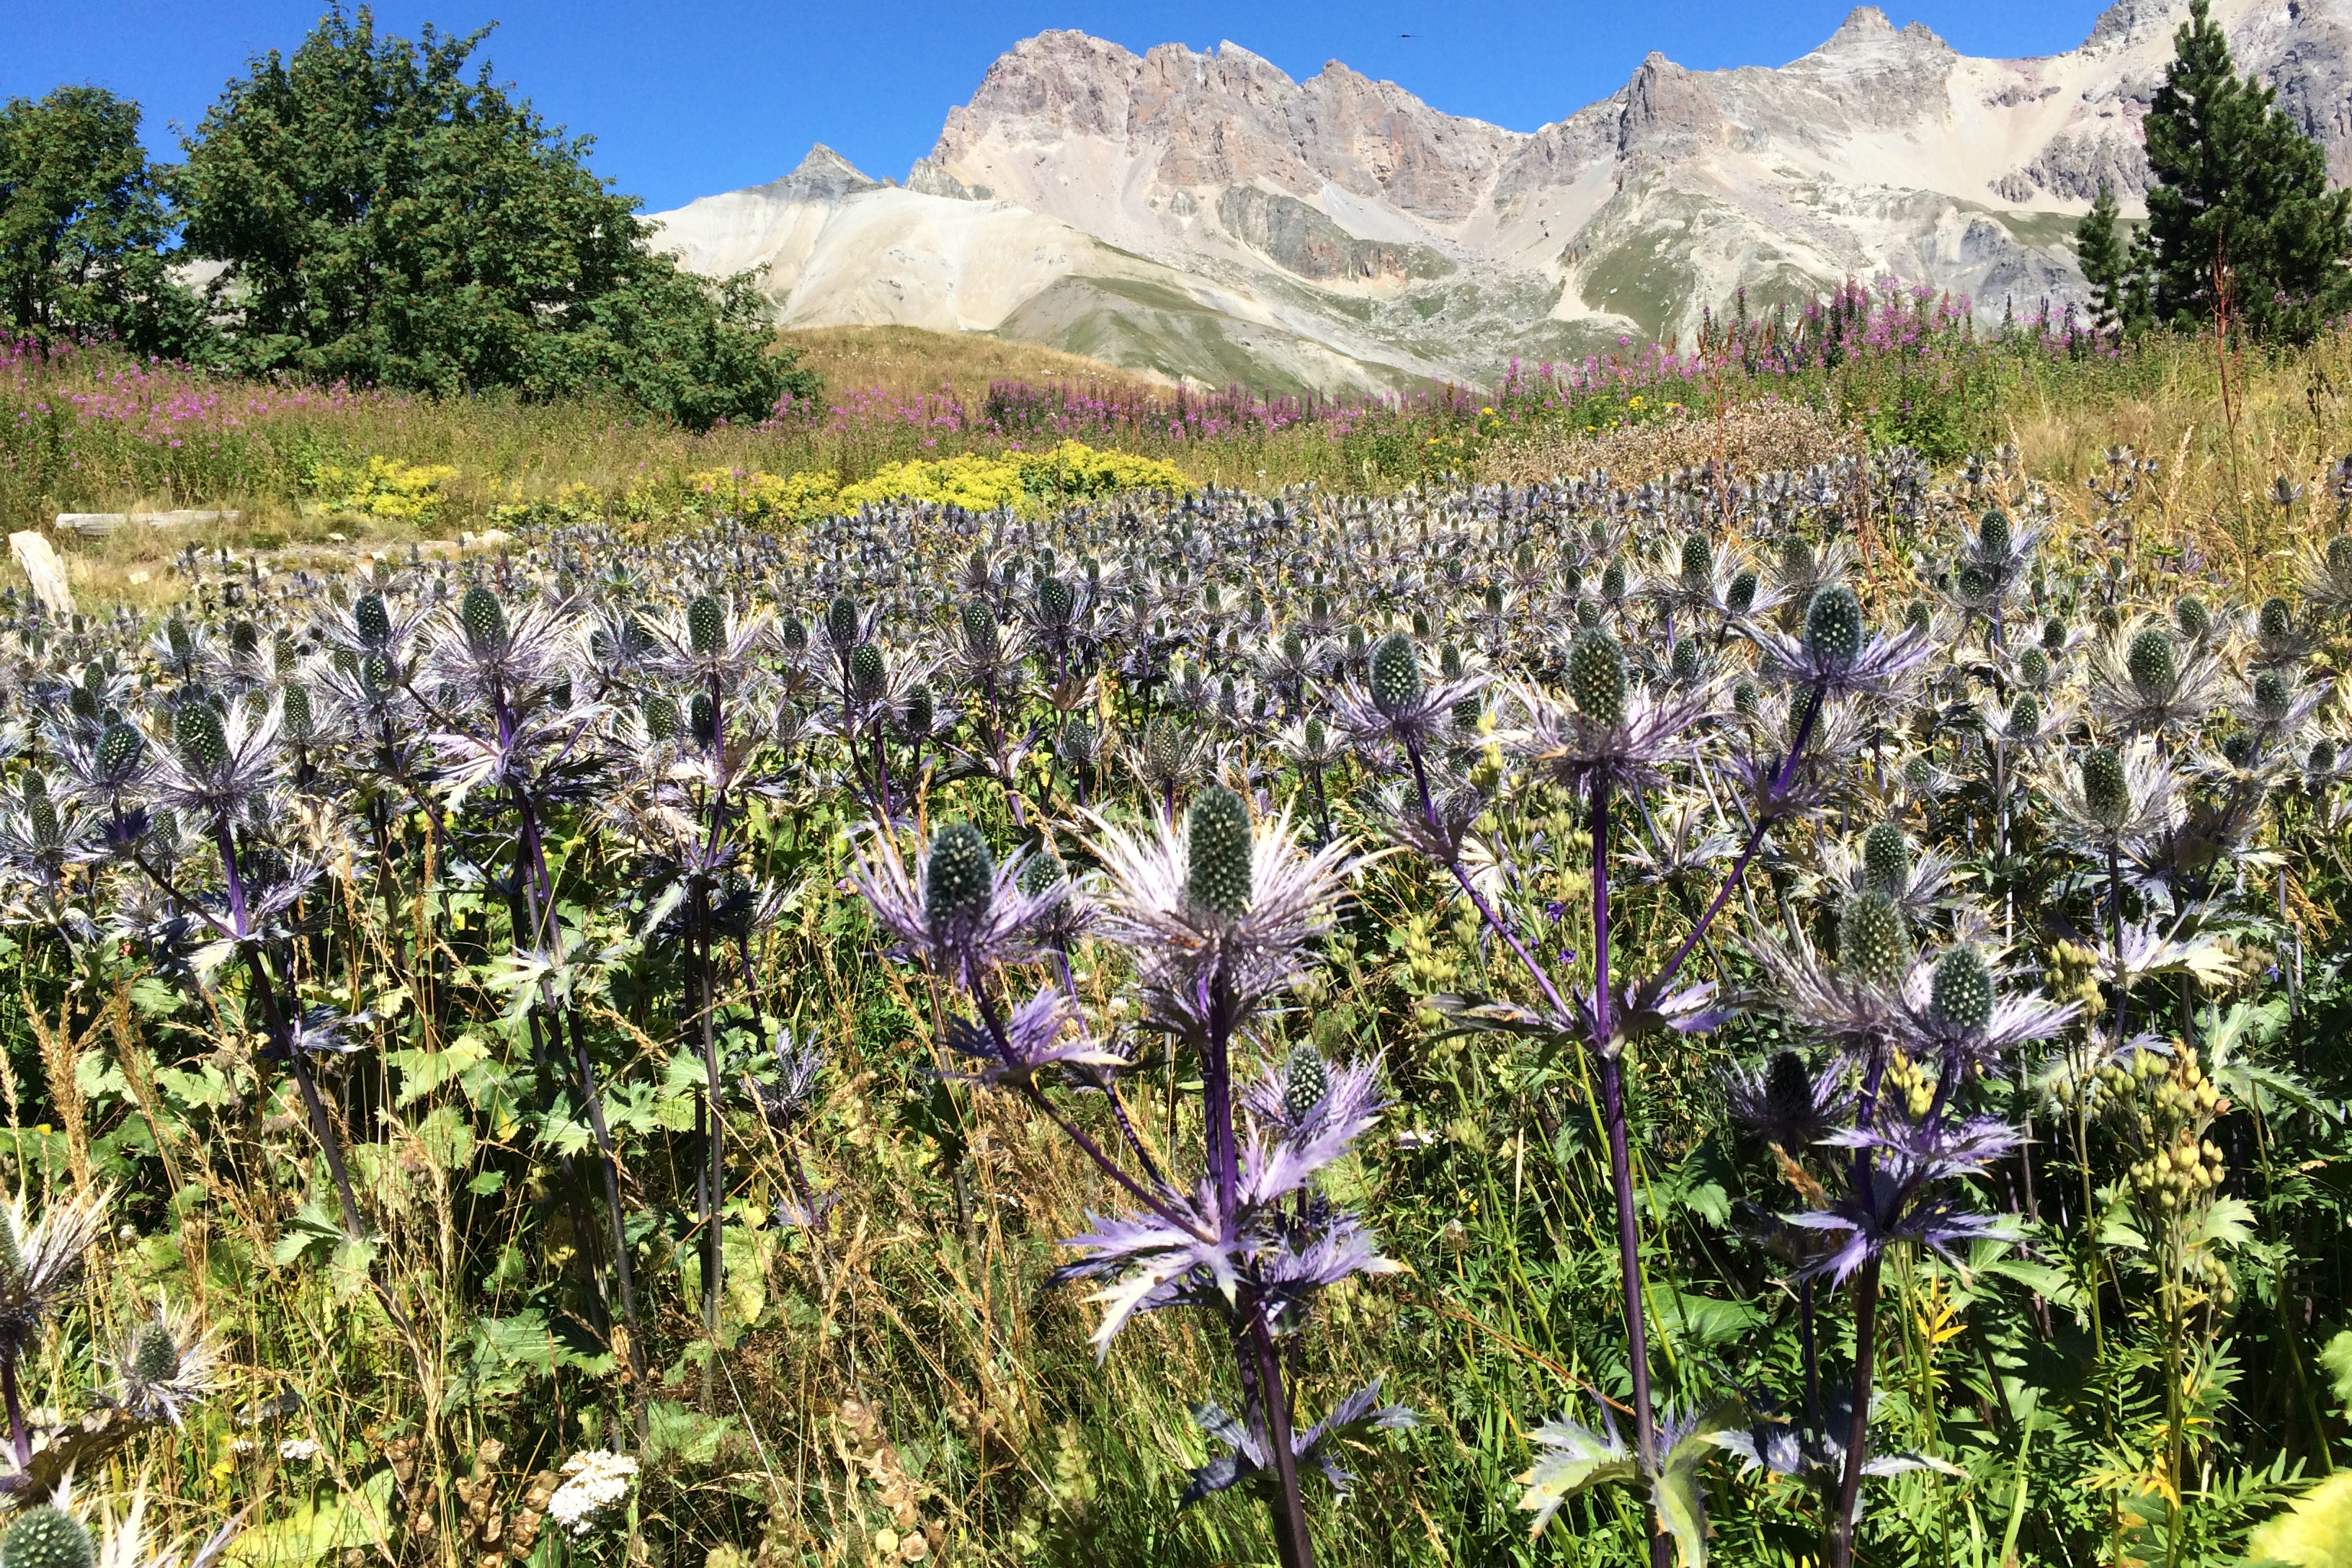 Un champ de chardons bleus, la plante emblématique protégée : la reine des alpes, avec la chaîne du Galibier à l’arrière-plan.